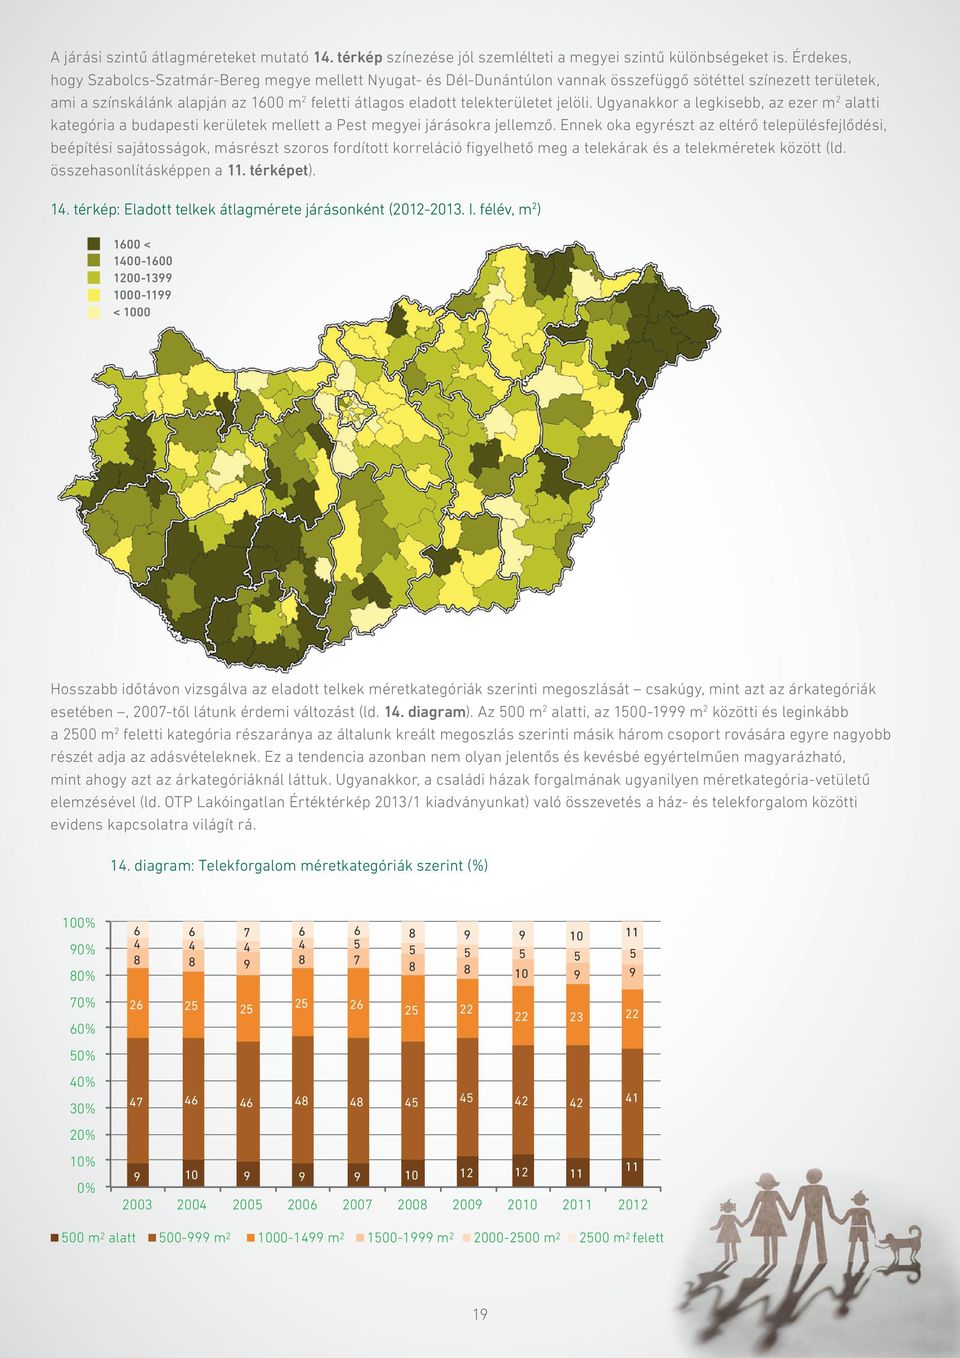 jelöli. Ugyanakkor a legkisebb, az ezer m 2 alatti kategória a budapesti kerületek mellett a Pest megyei járásokra jellemző.